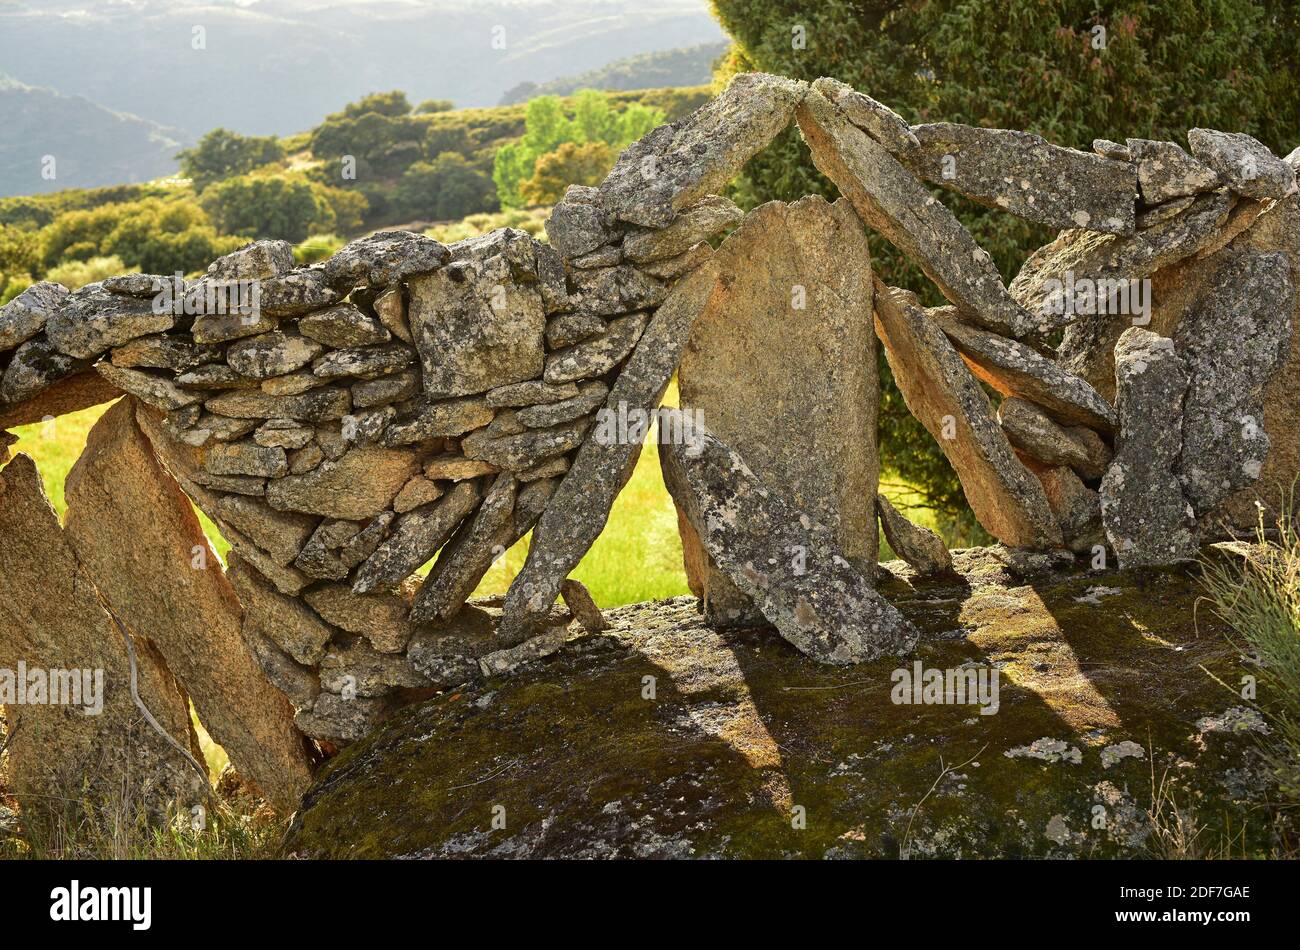 Mur en pierre sèche. Sayago, province de Zamora, Castilla y Leon, Espagne. Banque D'Images